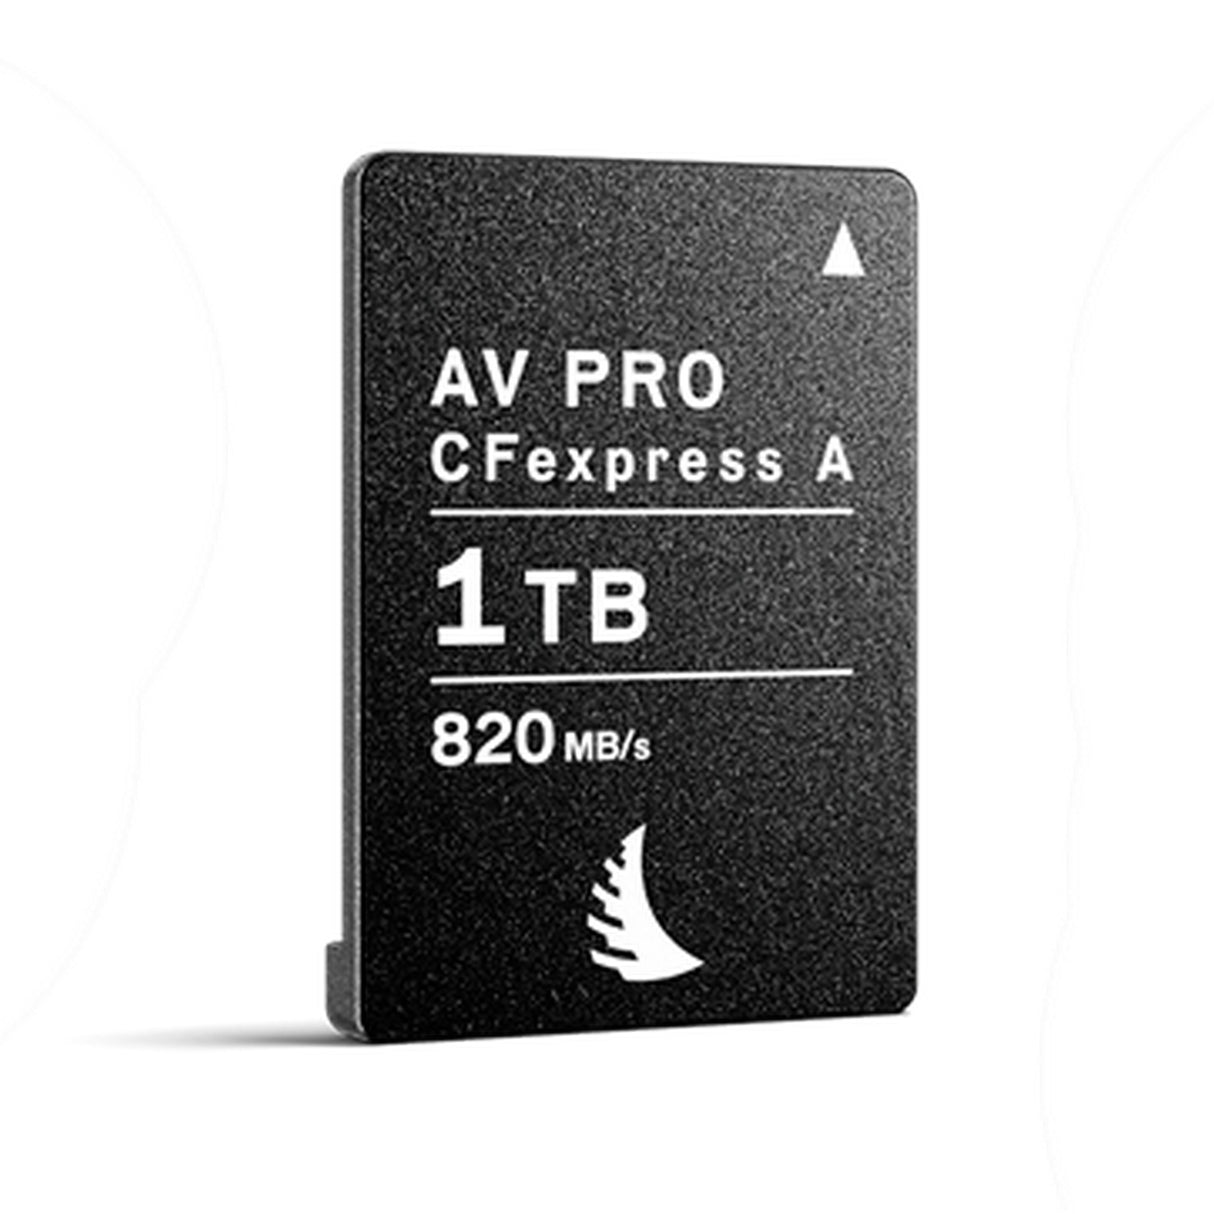 Angelbird AV PRO CFexpress Type A Card, 1 TB